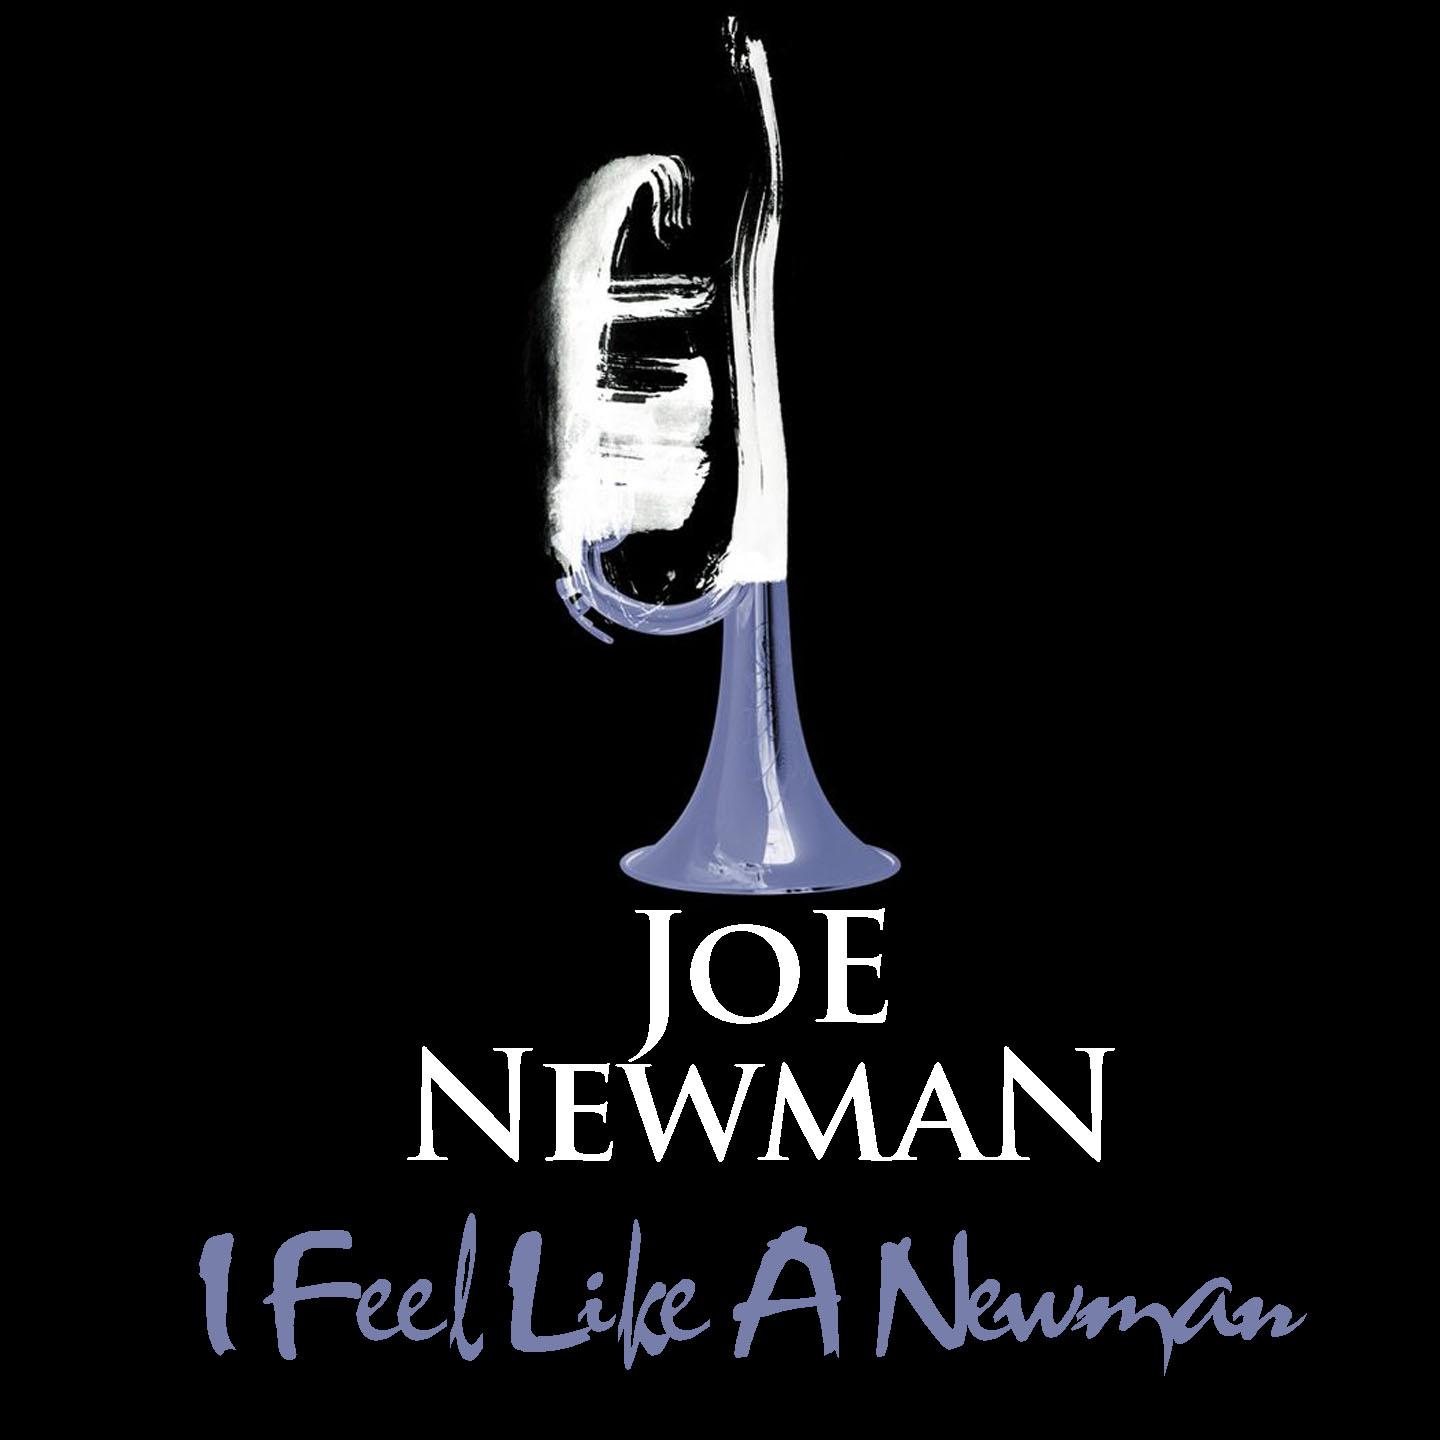 Joe Newman: I Feel Like A Newman